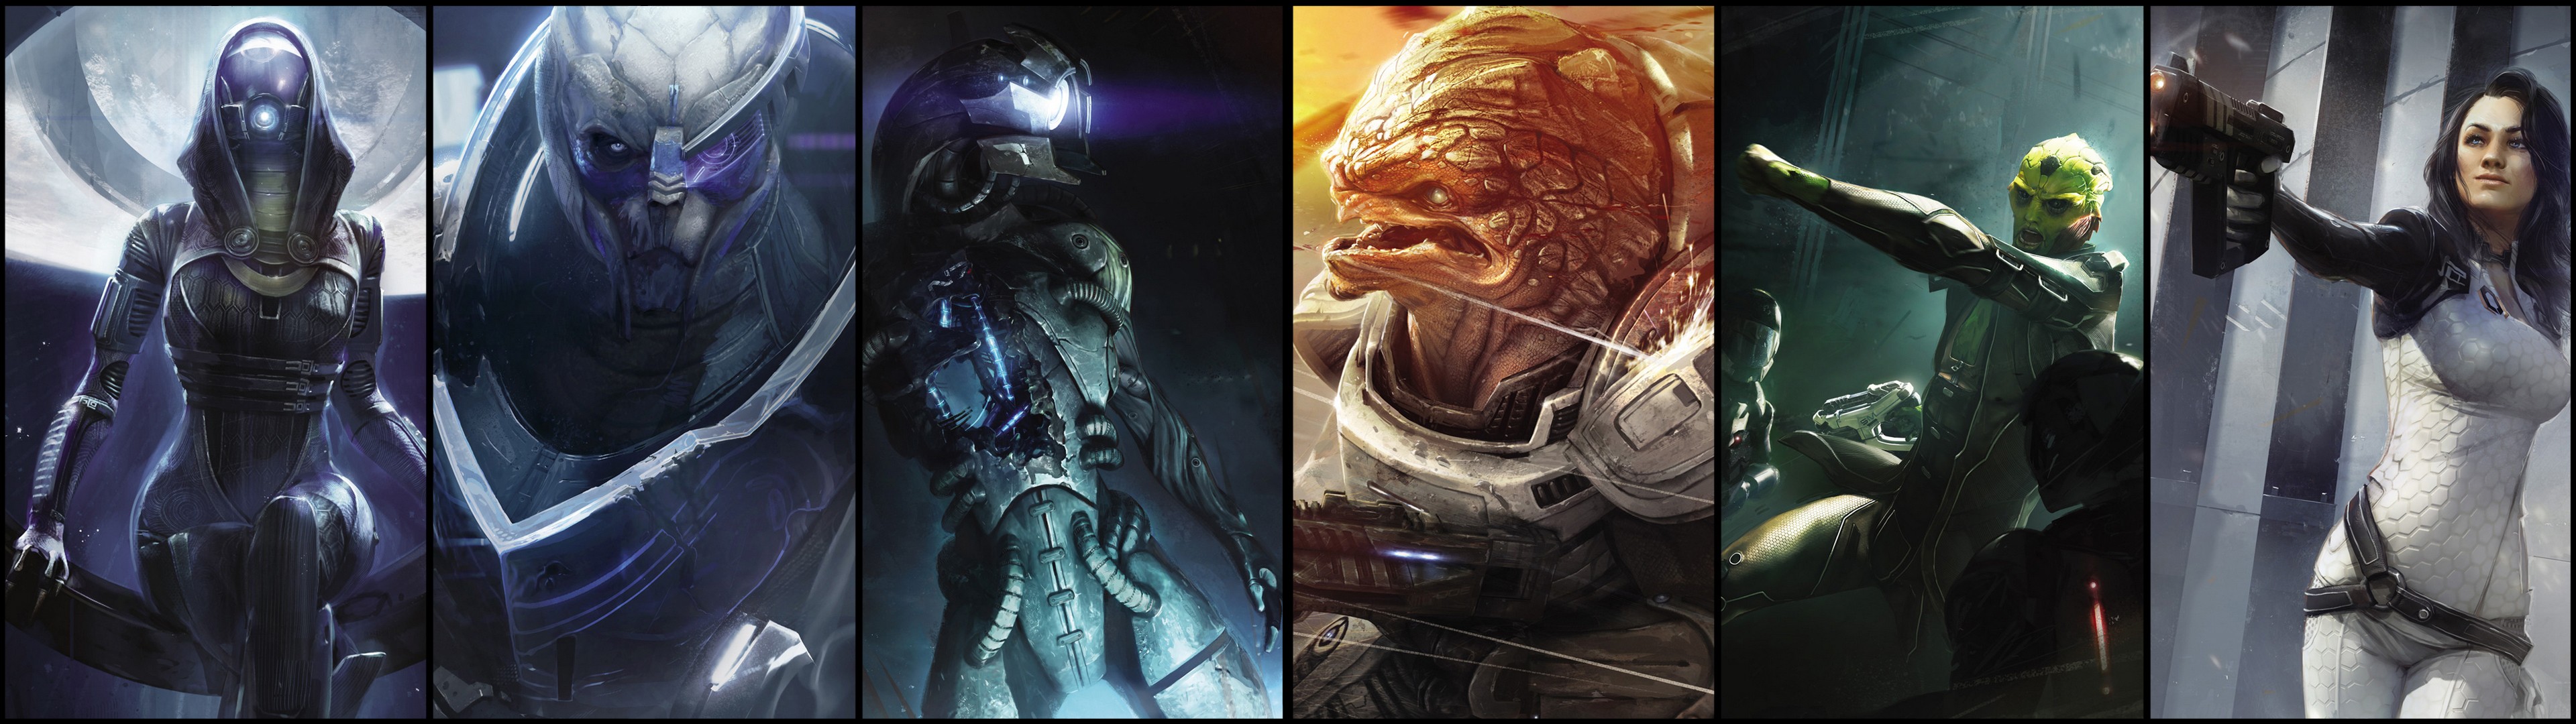 Mass Effect 2 HD Wallpaper